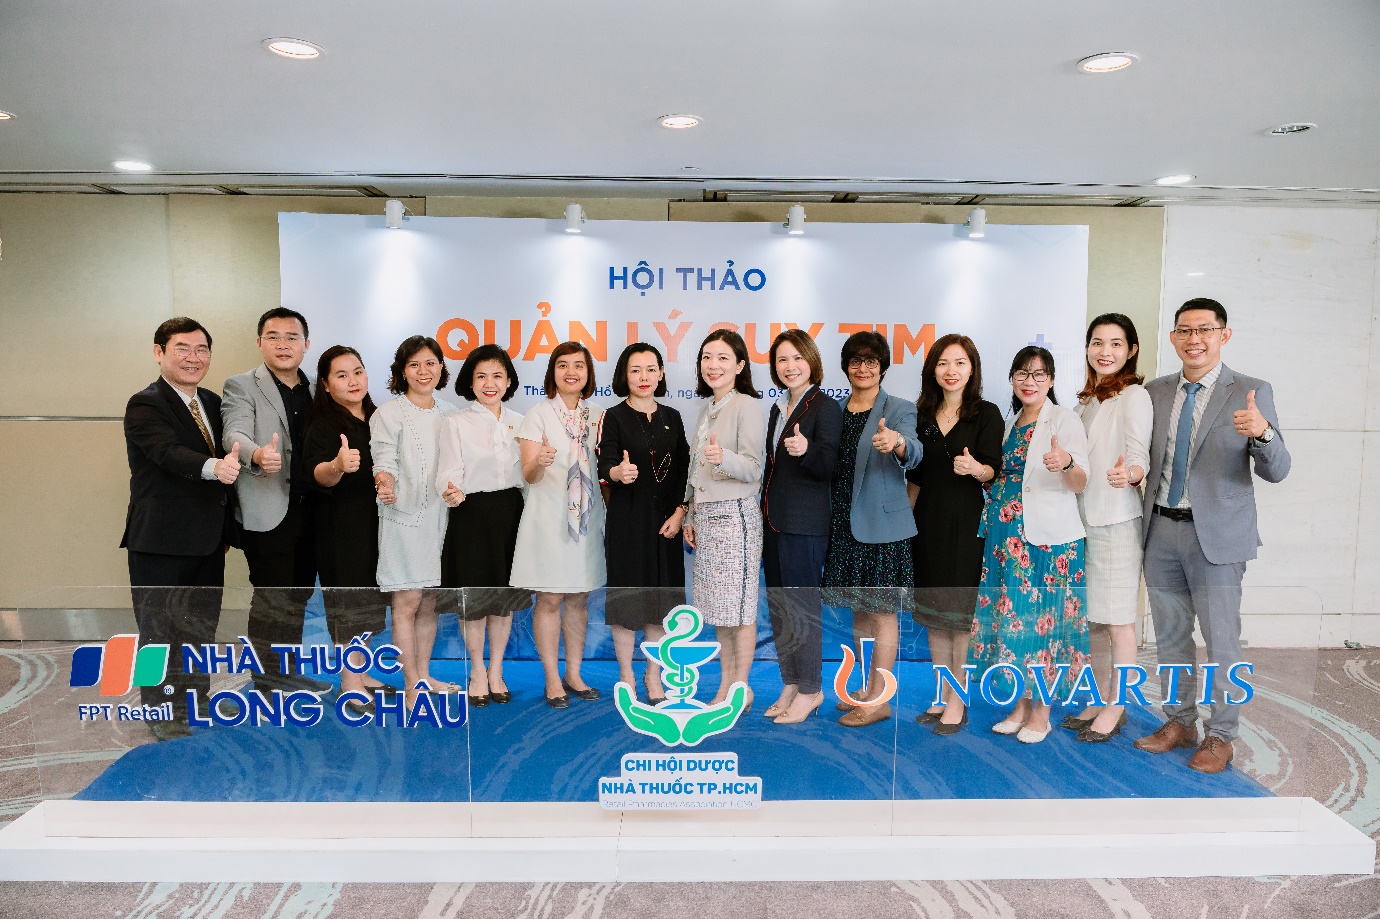 FPT Long Châu cùng Novartis Việt Nam triển khai chương trình đào tạo dược sĩ - Ảnh 2.